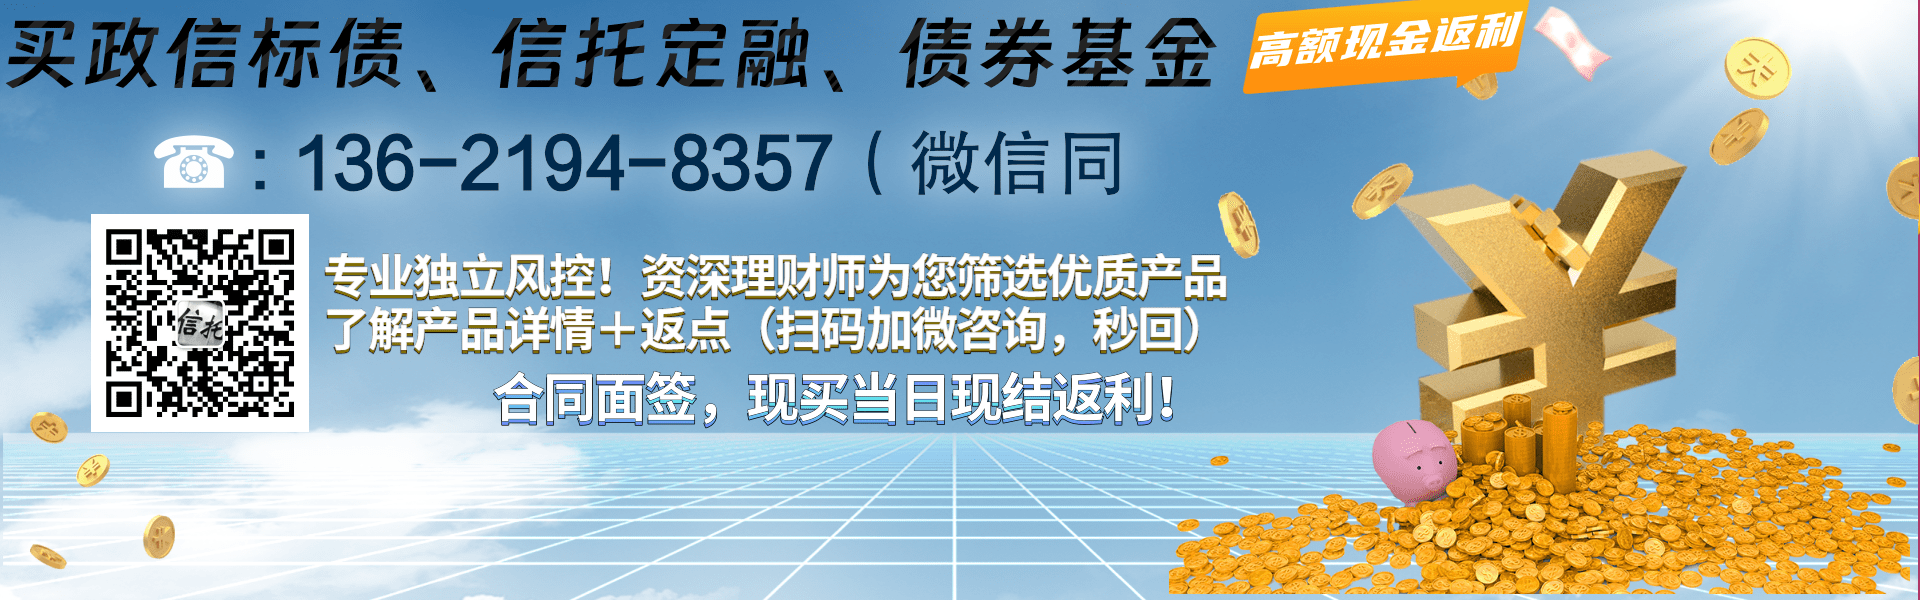 央企信托-840号江苏淮安政信集合信托计划